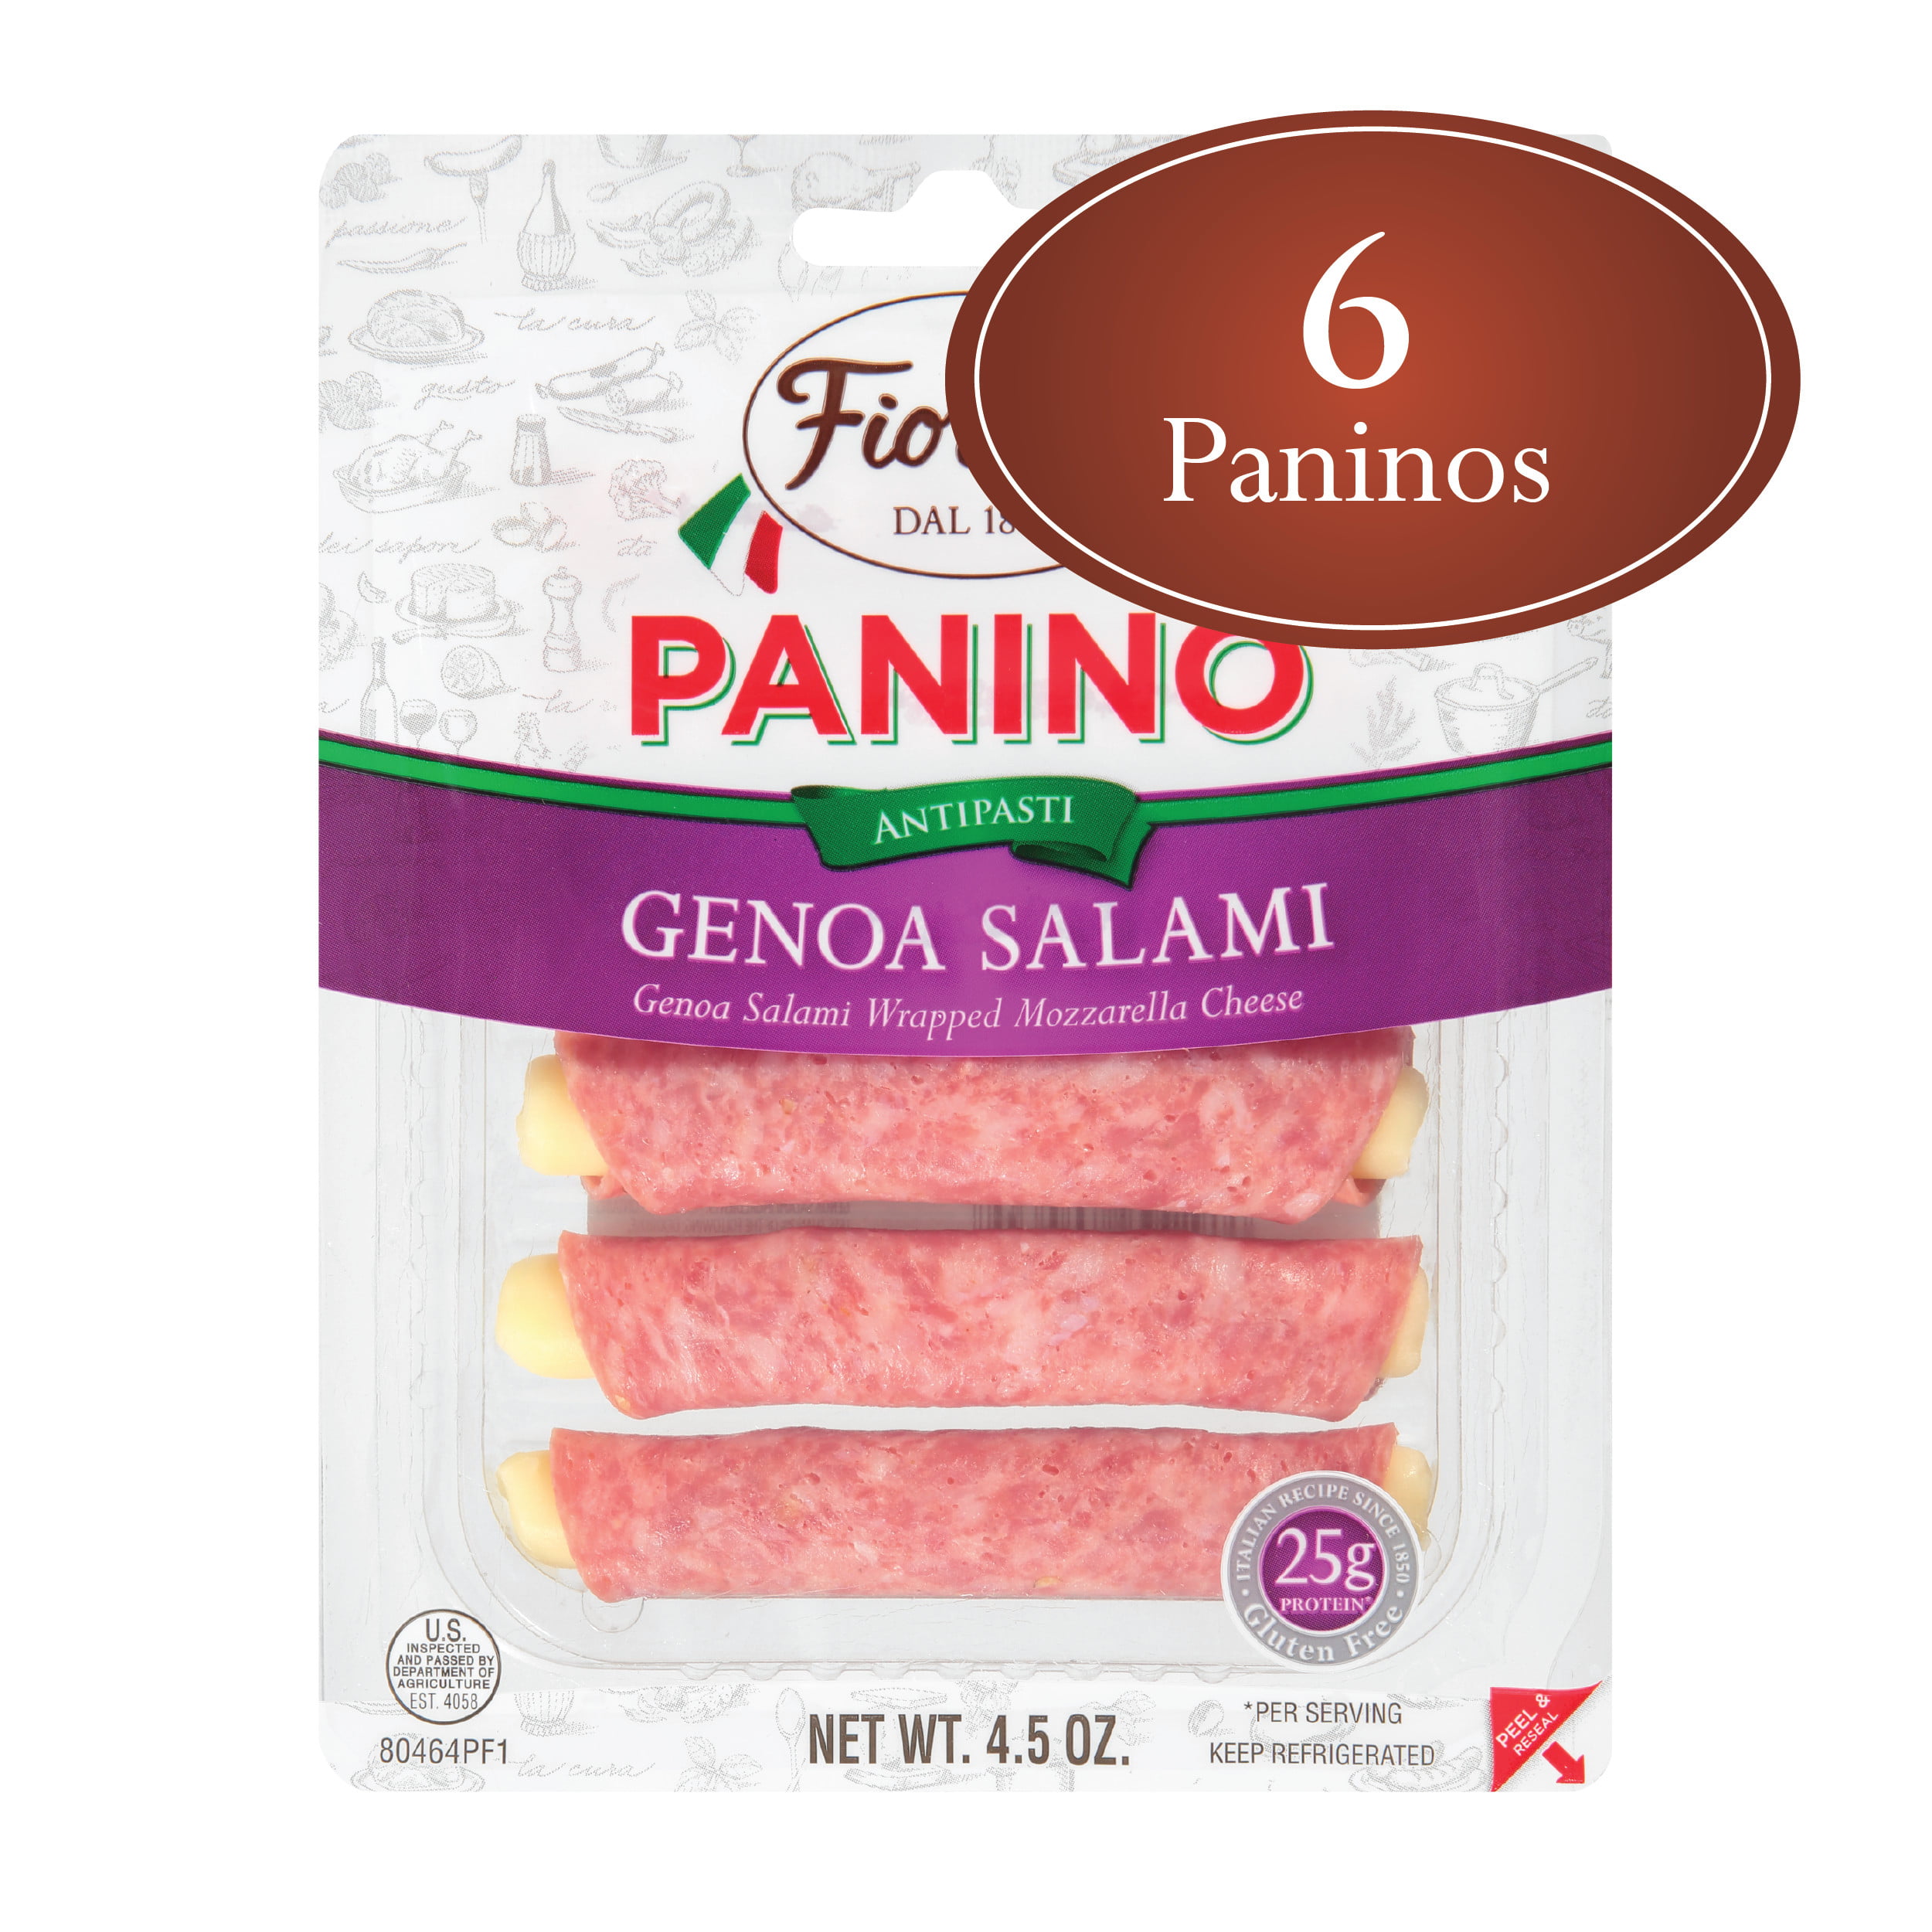 Fiorucci Genoa Salami Wrapped Mozzarella Cheese Panino, Easy to Open ...